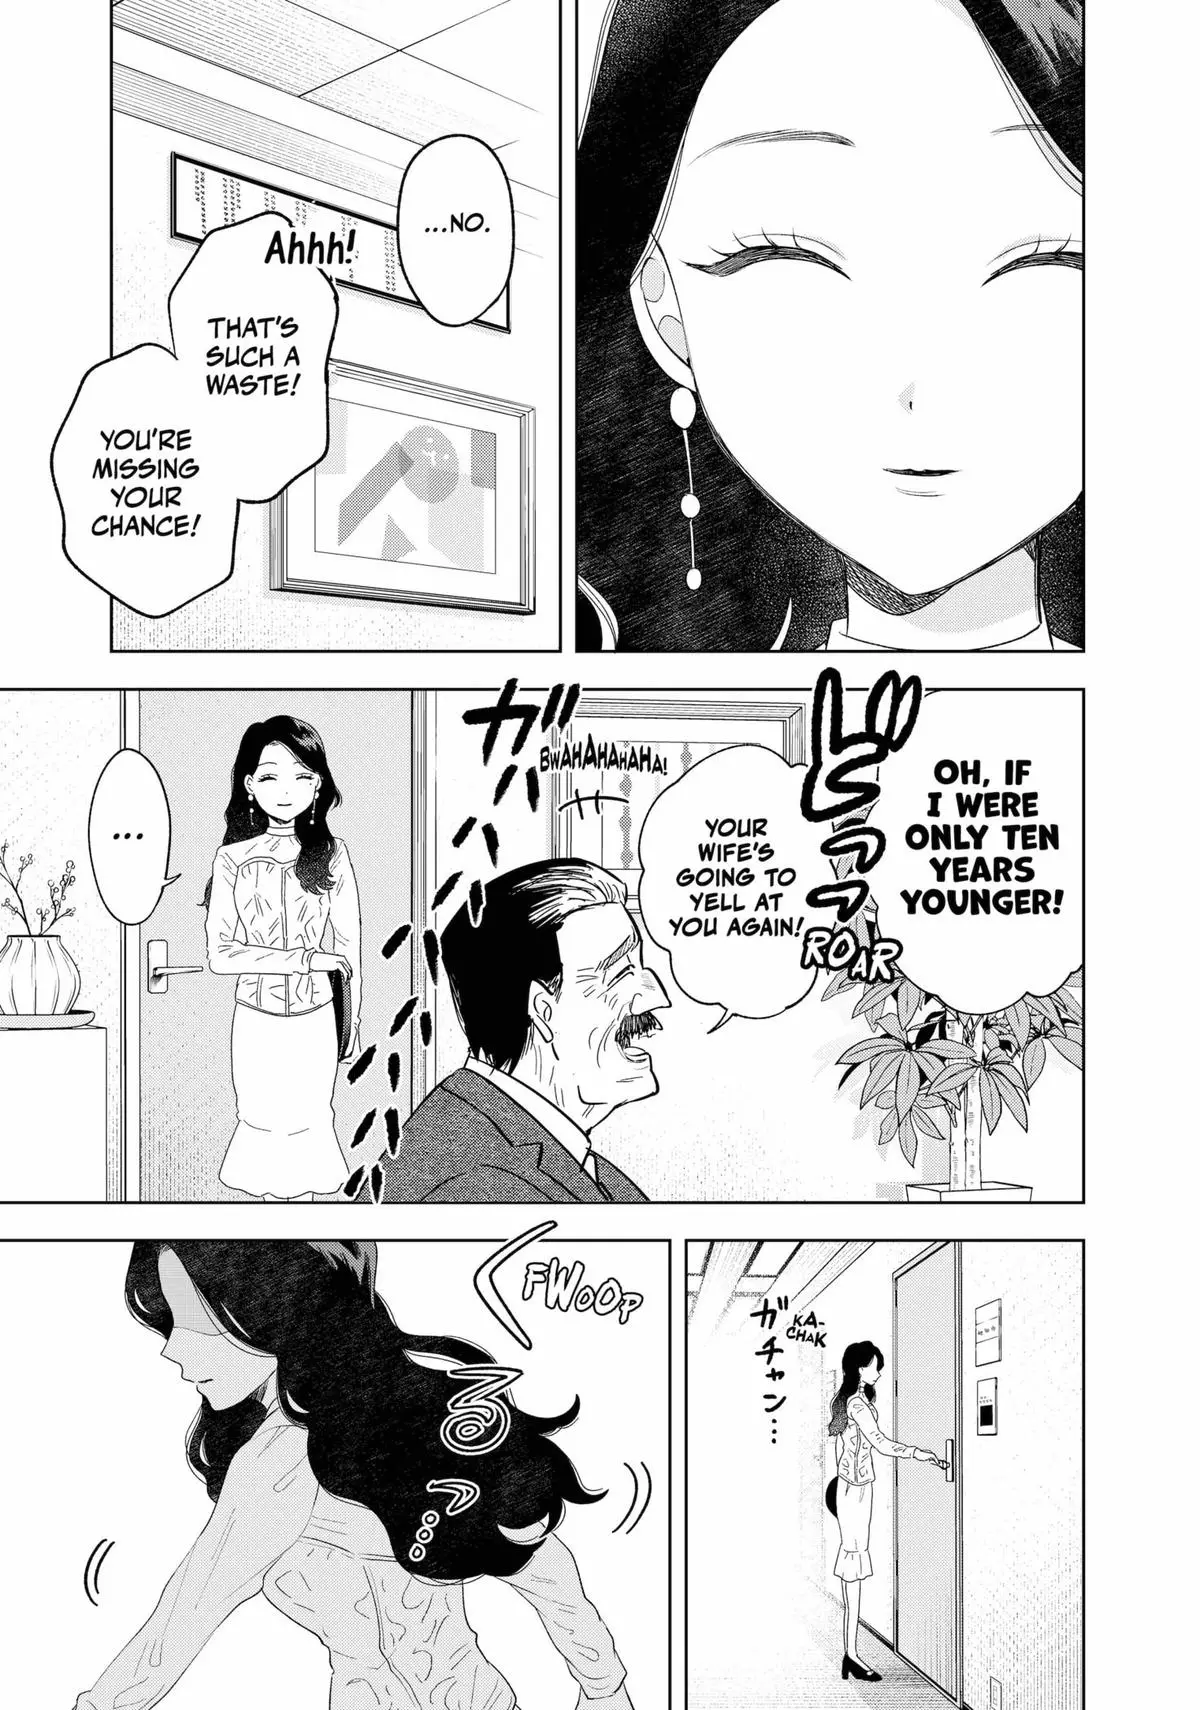 Tsuruko Returns The Favor - 10 page 3-d0217a2c